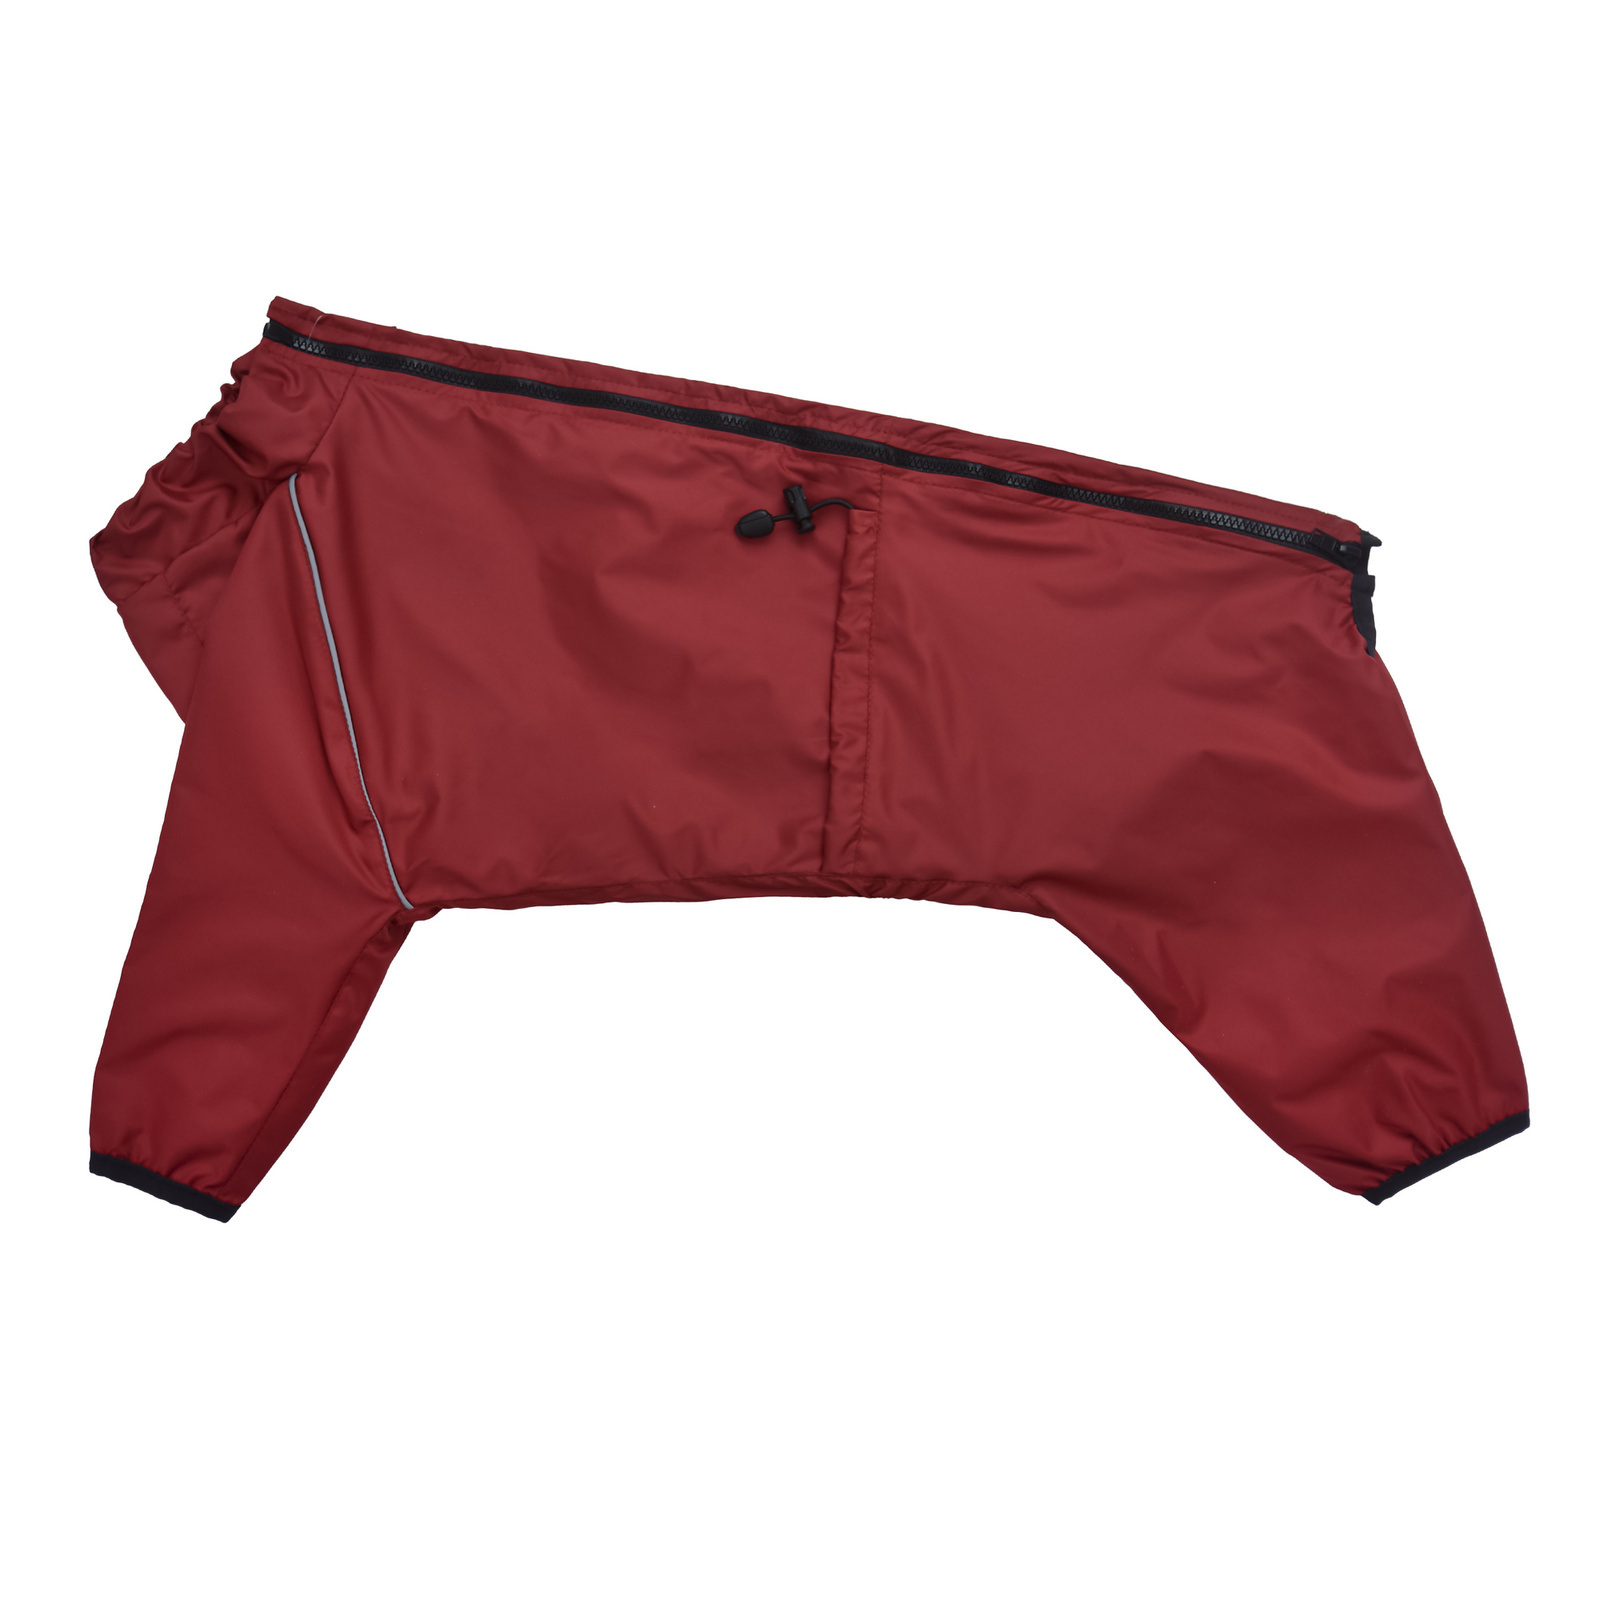 Tappi одежда Tappi одежда дождевик комбинезон Винум для средних и крупных собак, бордовый (М4)